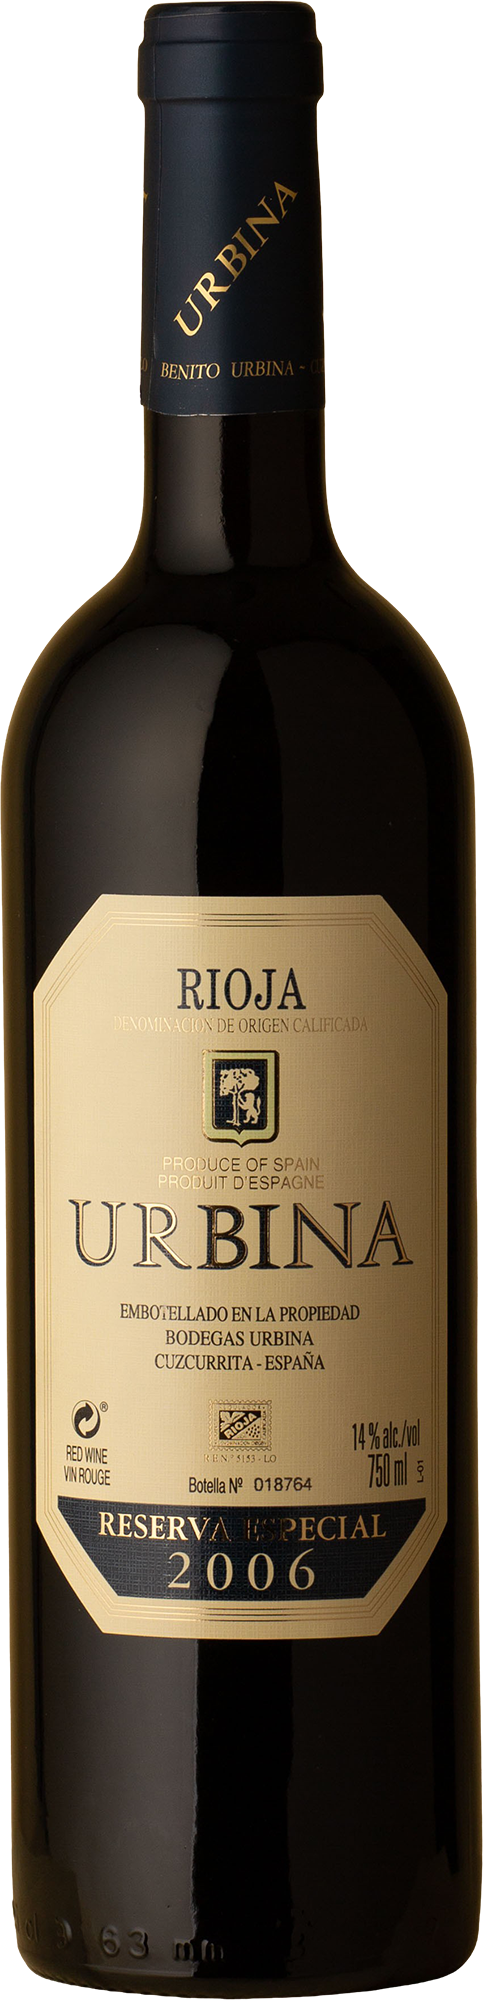 Bodegas Urbina - Rioja Reserva Especial Tempranillo 2006 Red Wine